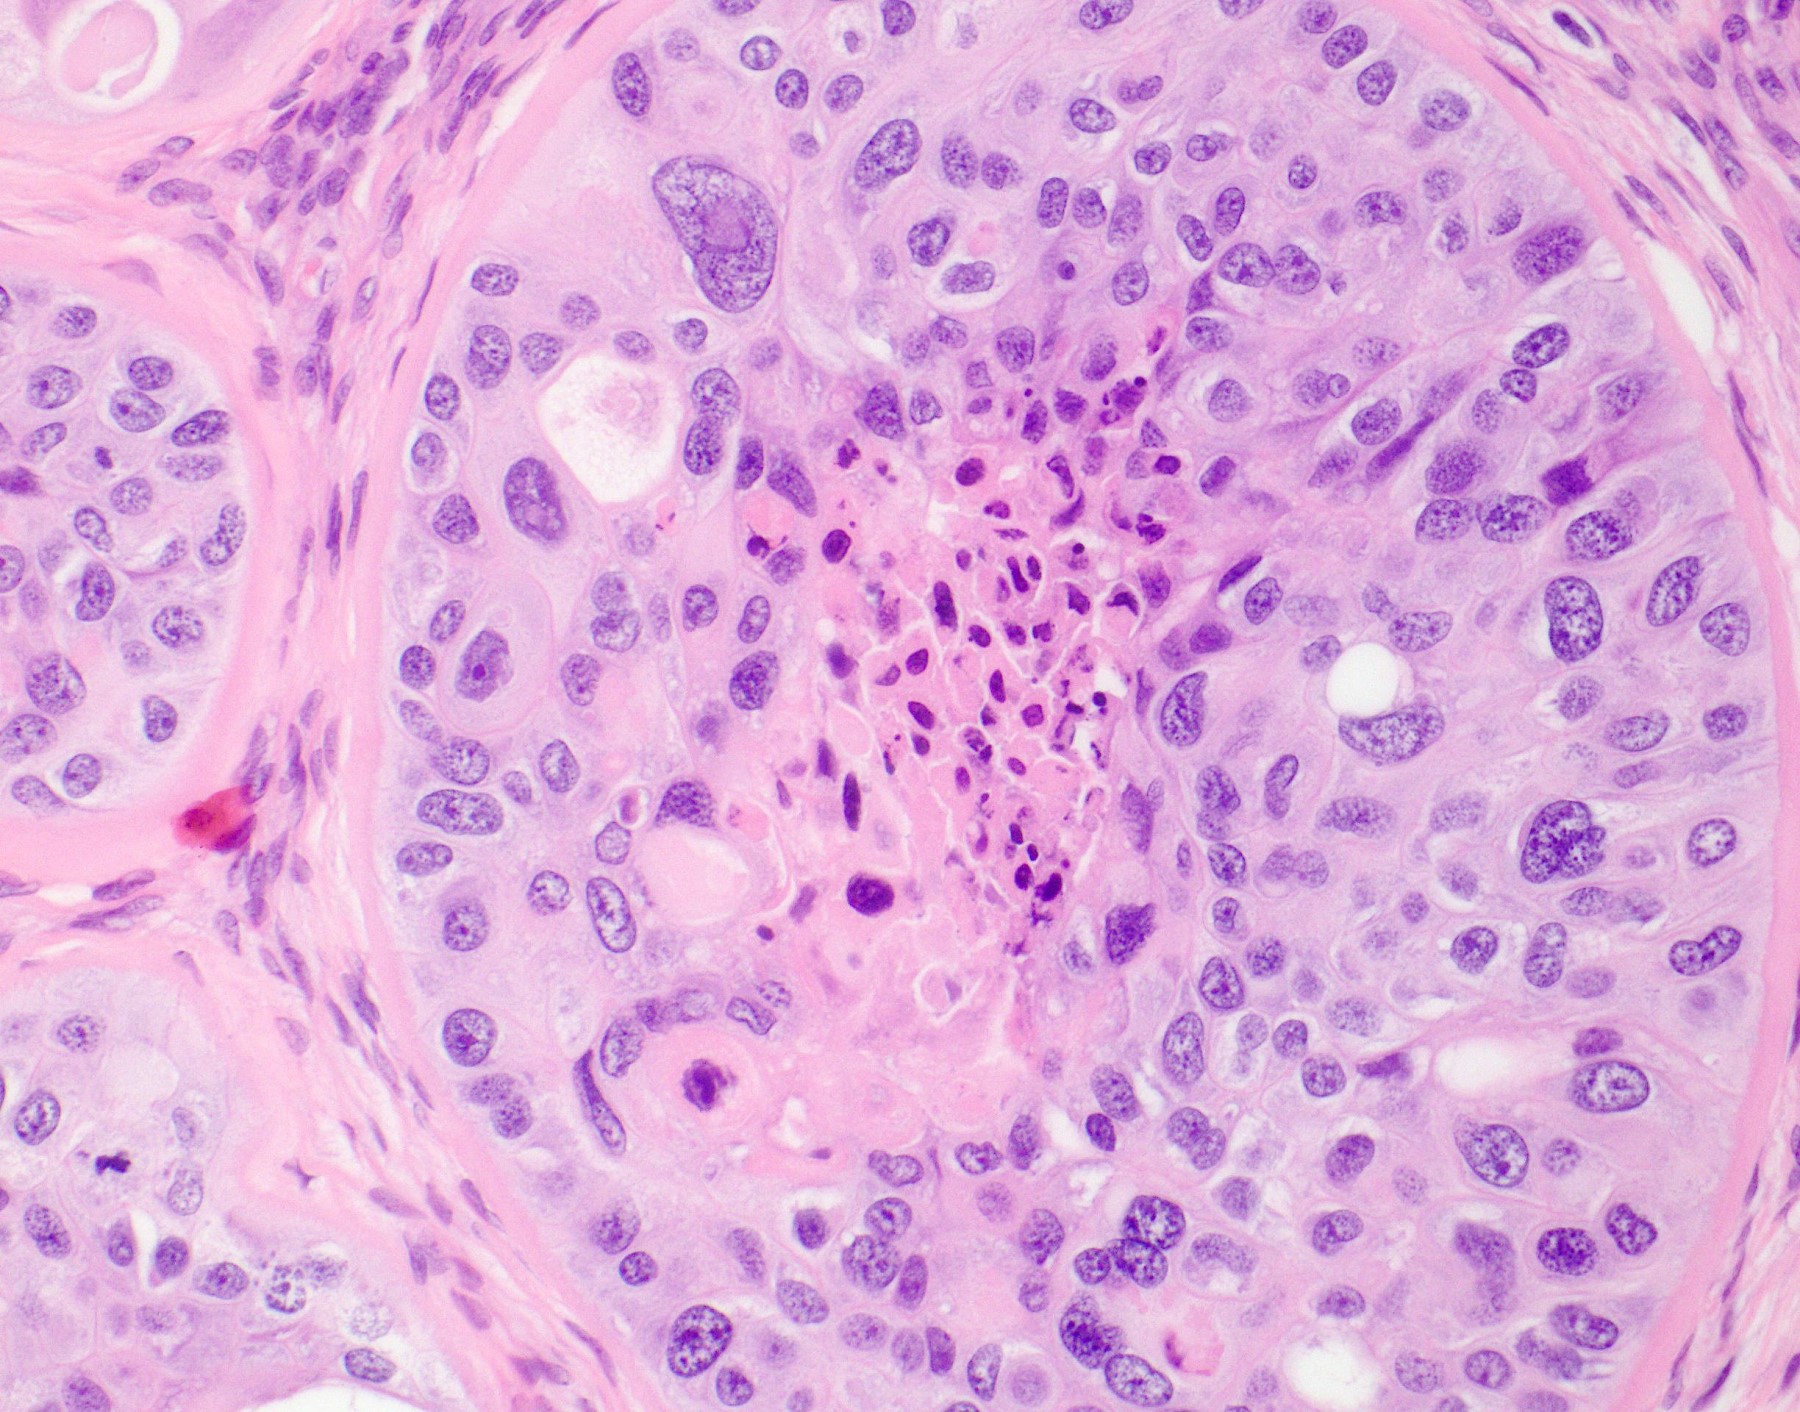 Epithelioid tumor cells